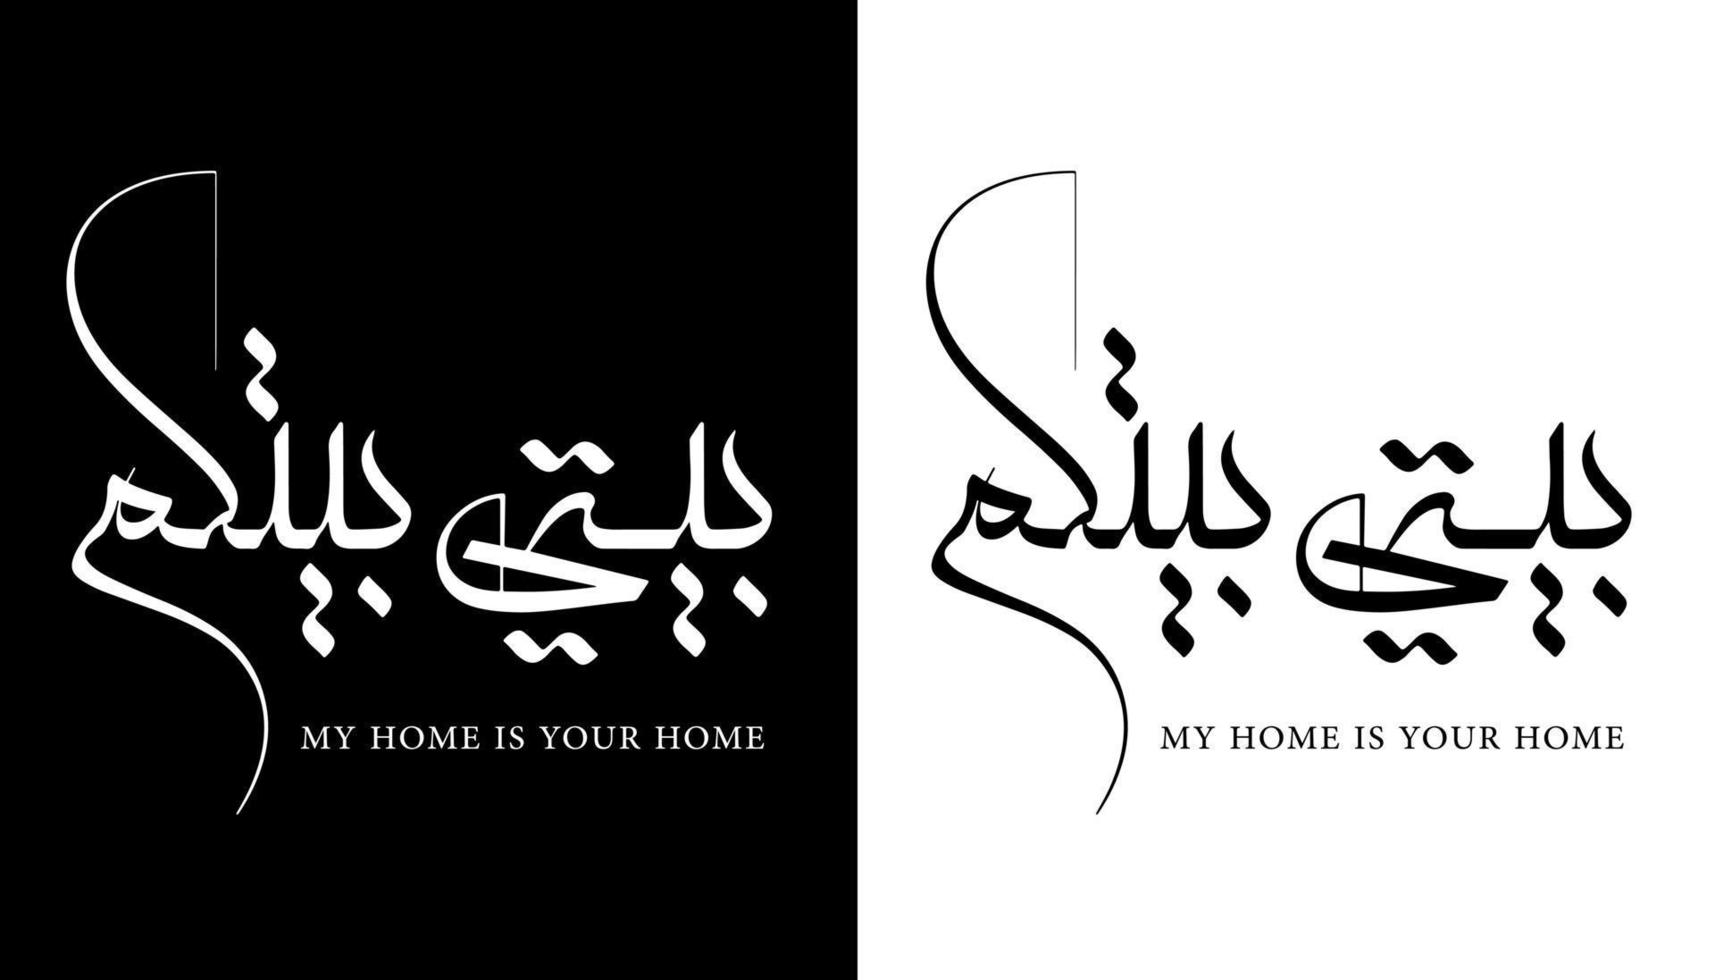 nome de caligrafia árabe traduzido 'minha casa é sua casa' letras árabes alfabeto fonte letras ilustração em vetor logotipo islâmico